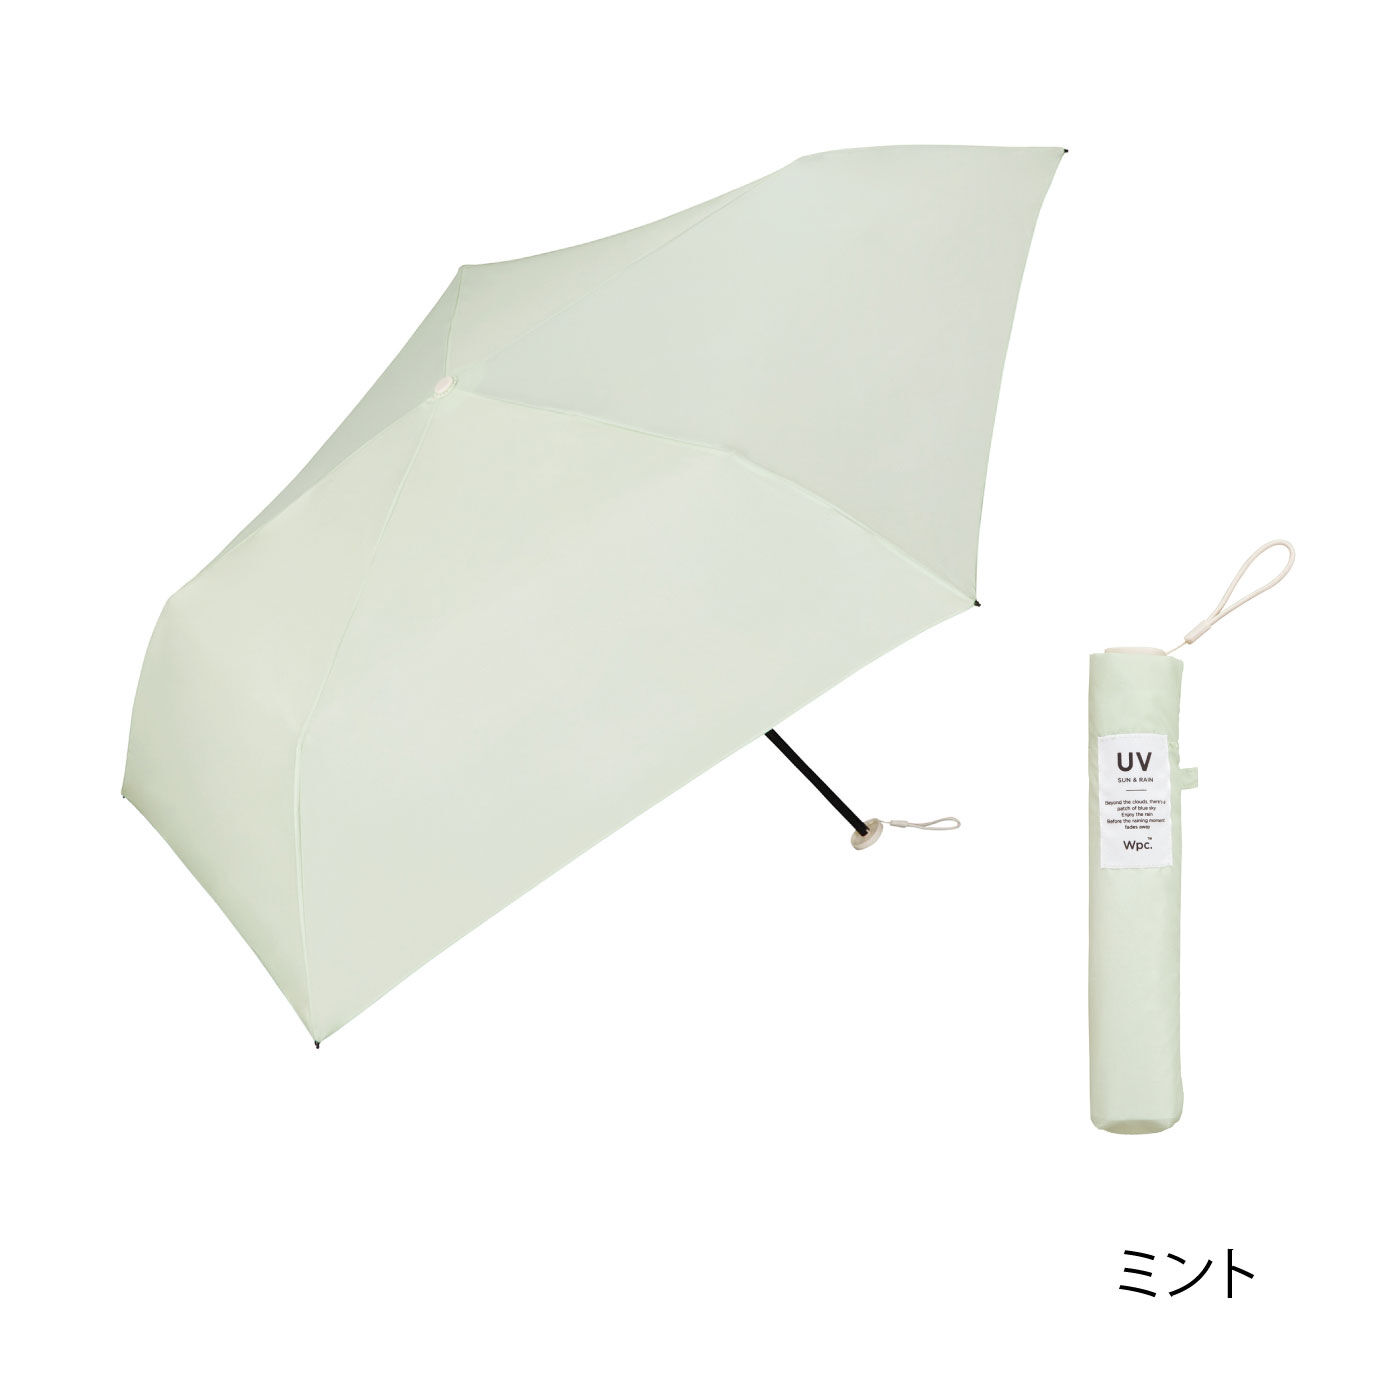 FELISSIMO PARTNERS|Ｗｐｃ.　しっかりサイズと軽さがうれしい　折りたたみ傘エアライトソリッド晴雨兼用